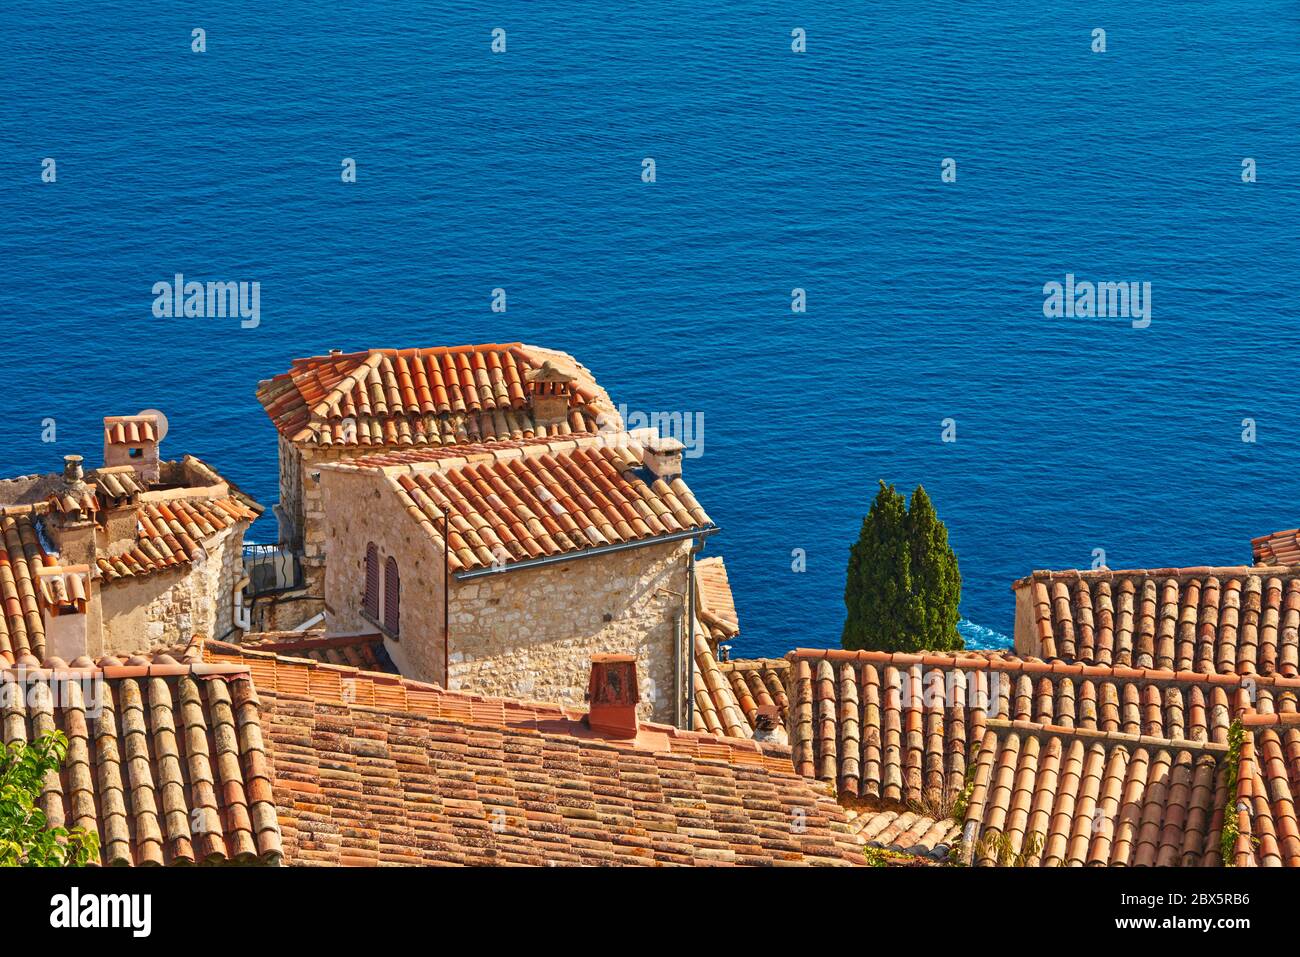 Tejados de terracota y campanario de la aldea de Eze con el mar Mediterráneo. Riviera Francesa, Alpes Marítimos (06), Francia Foto de stock